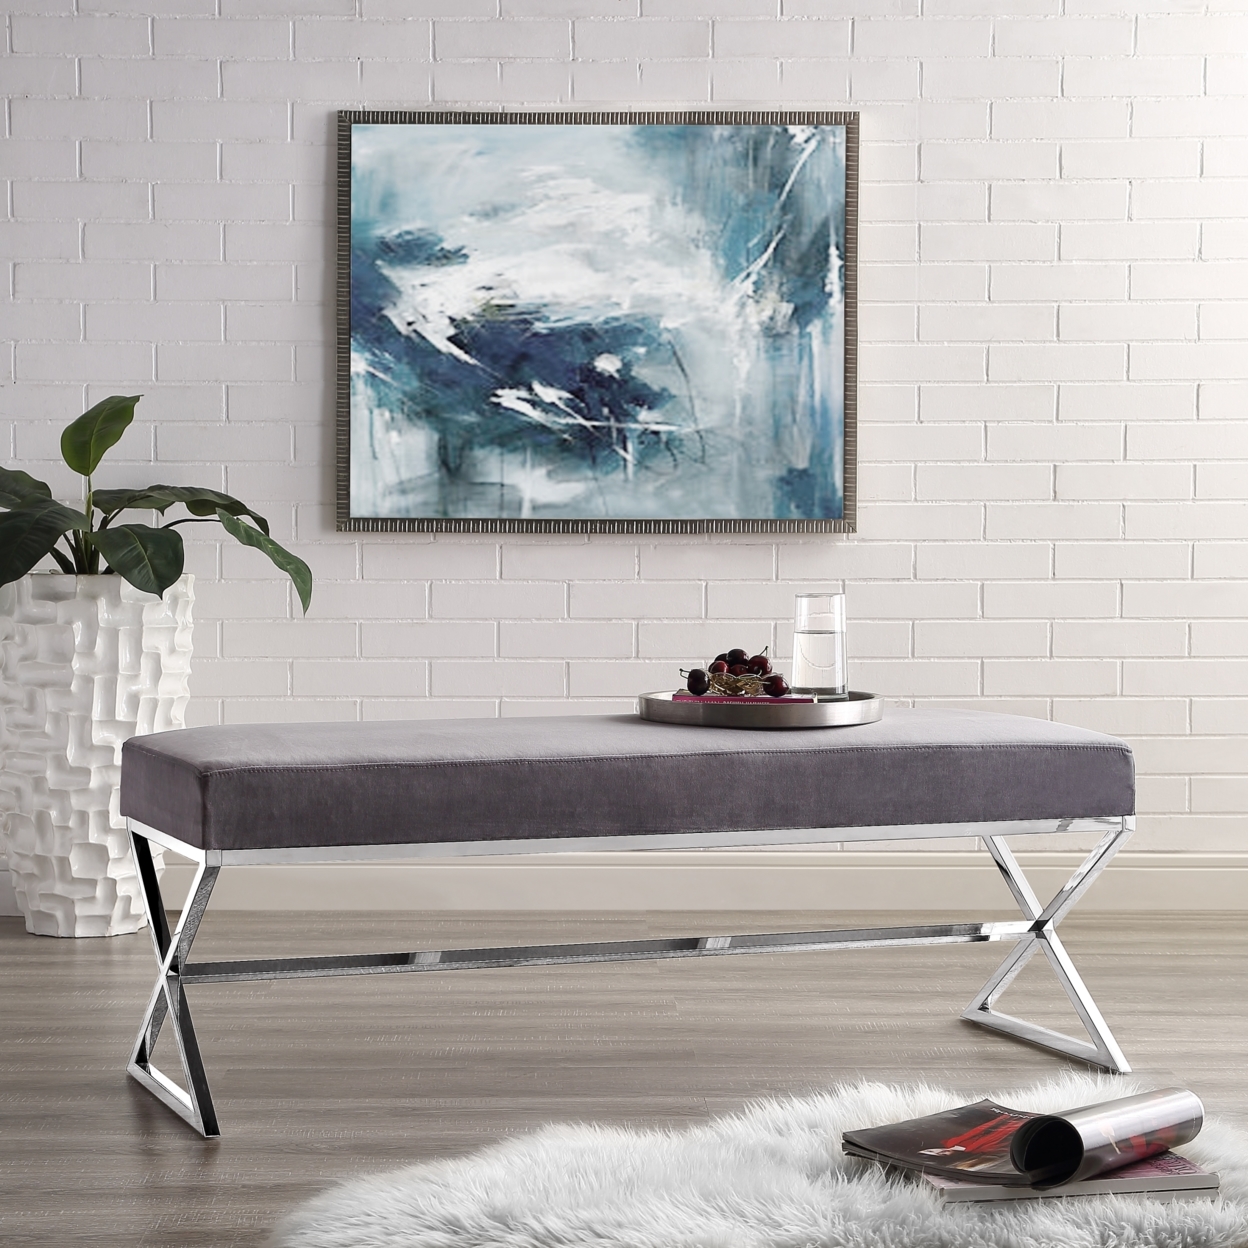 Liam Velvet Upholstered Bench-Stainless Steel Legs-Living-room, Entryway, Bedroom-Inspired Home - Grey